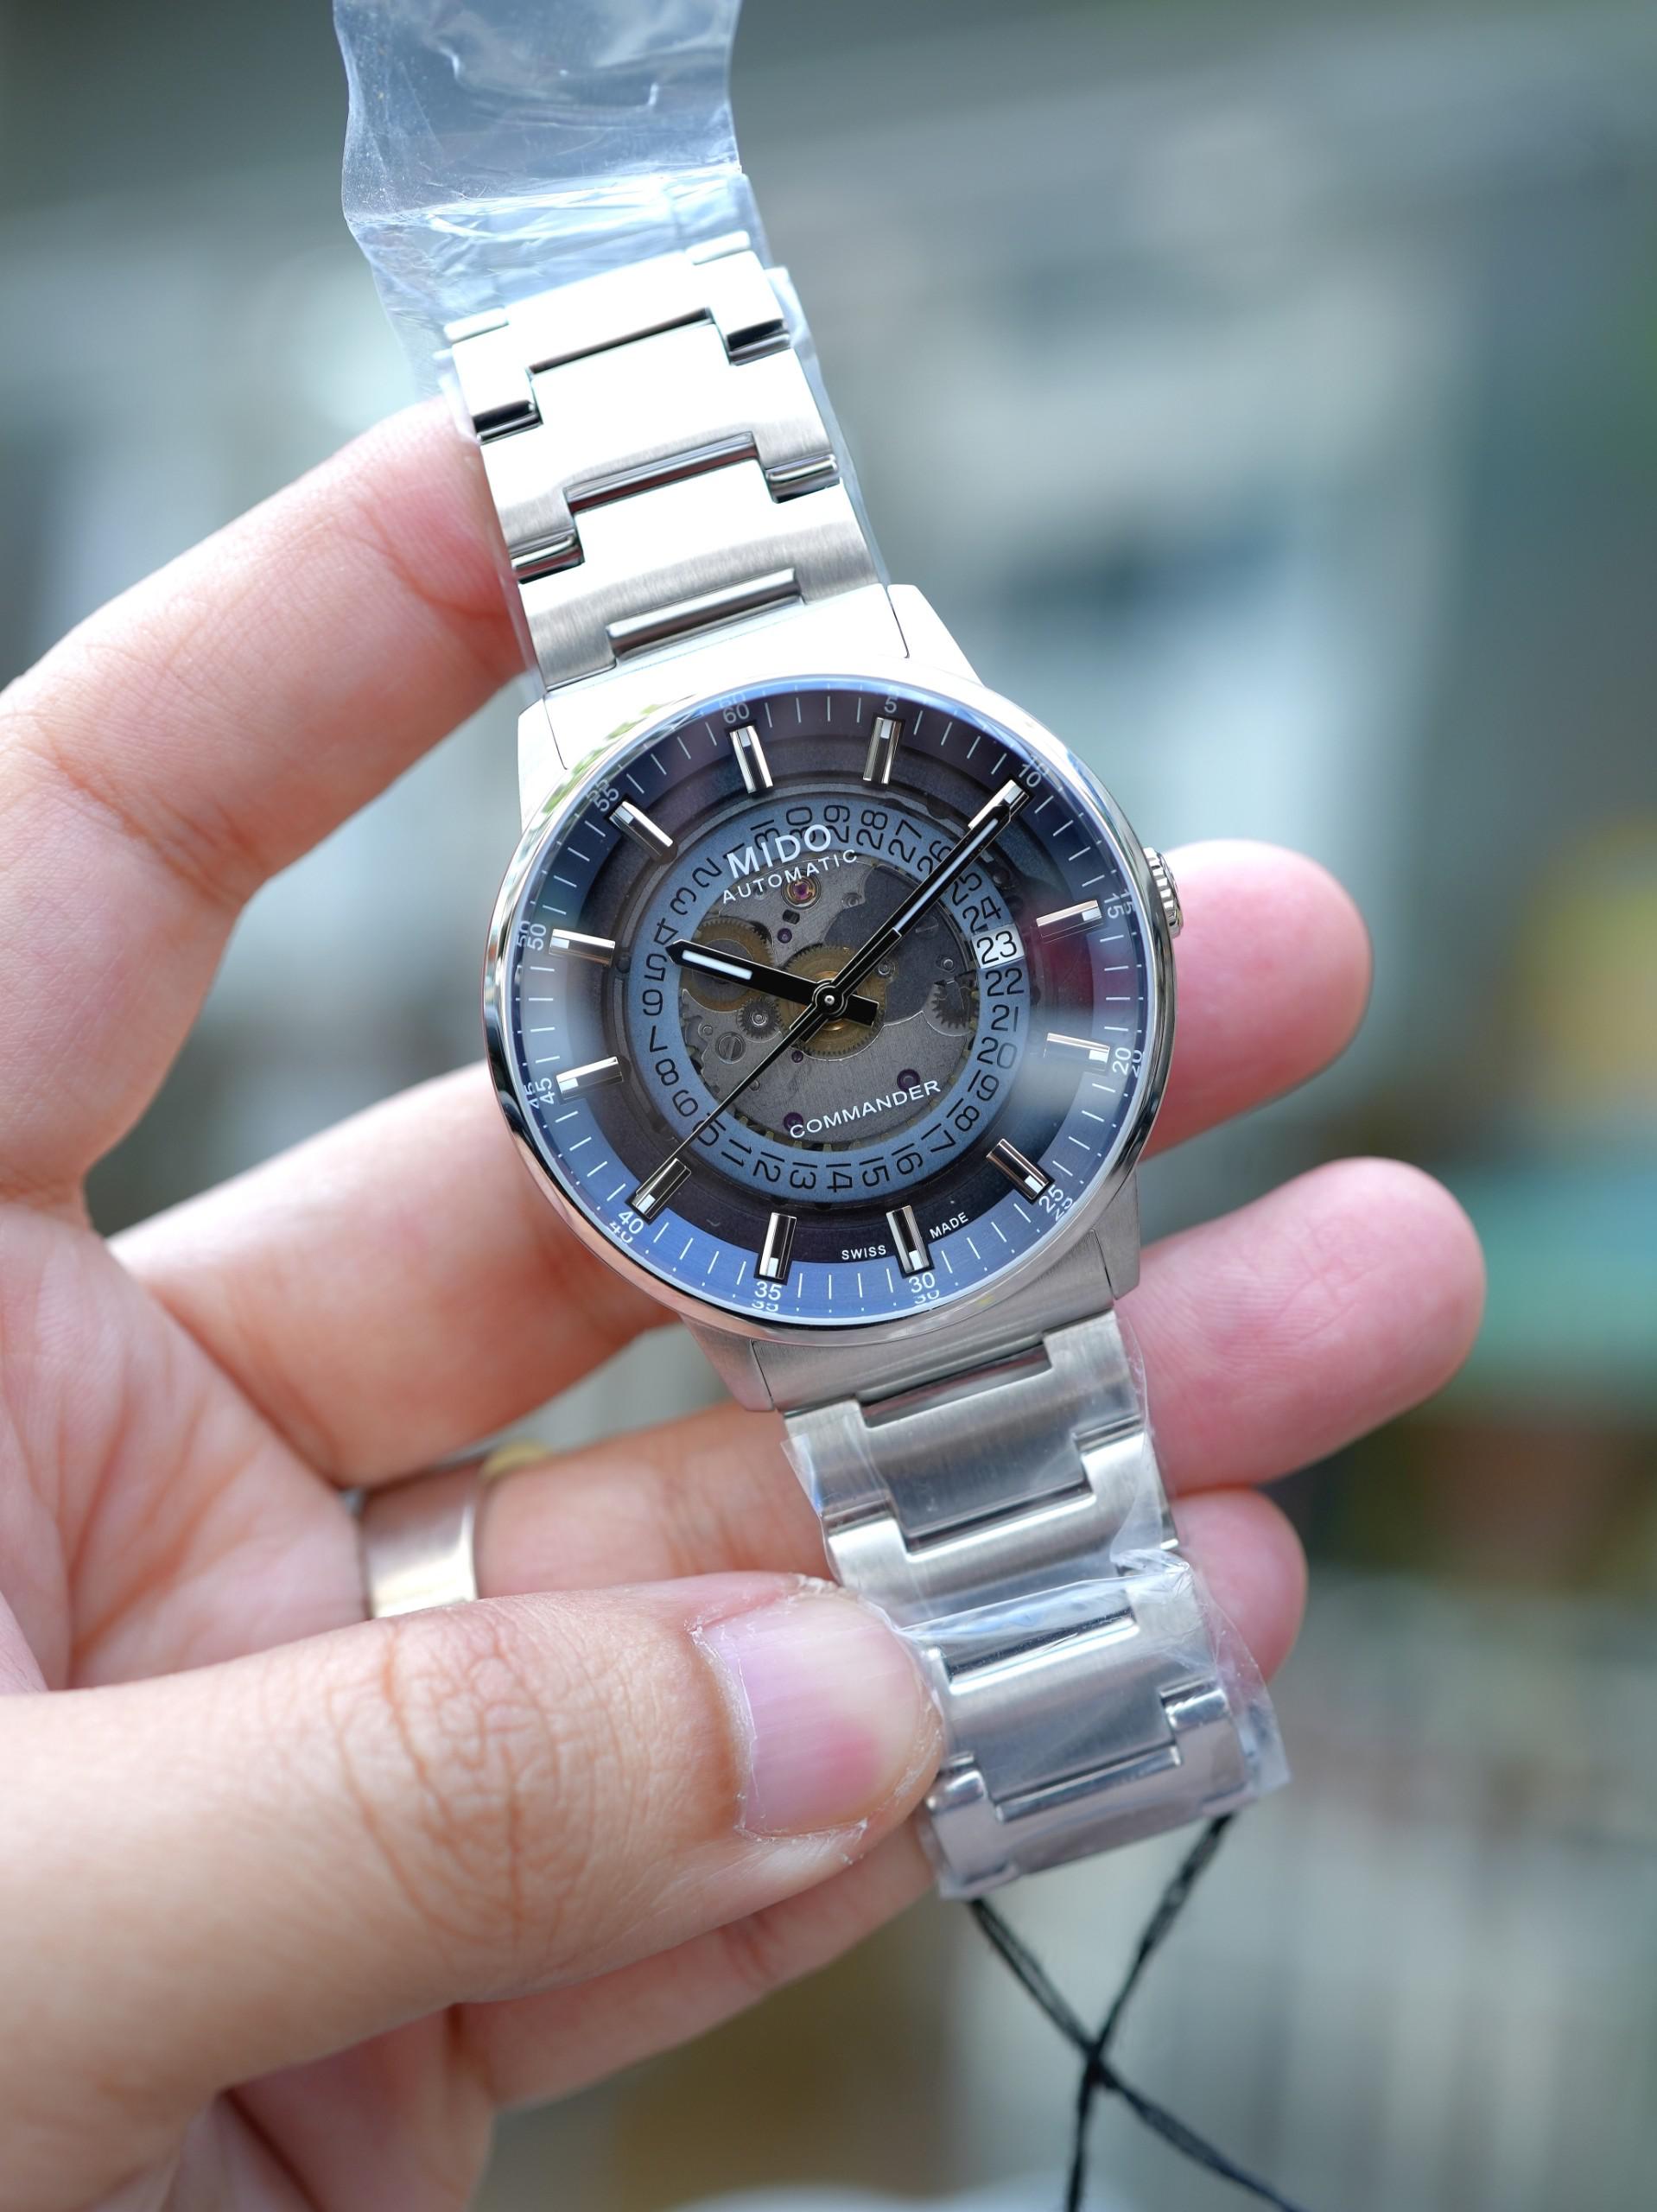 Đồng hồ Mido commander ocean star datoday GOLD| Đồng hồ cũ | Chợ đồng hồ |  Mua bán đồng hồ cũ tại tphcm